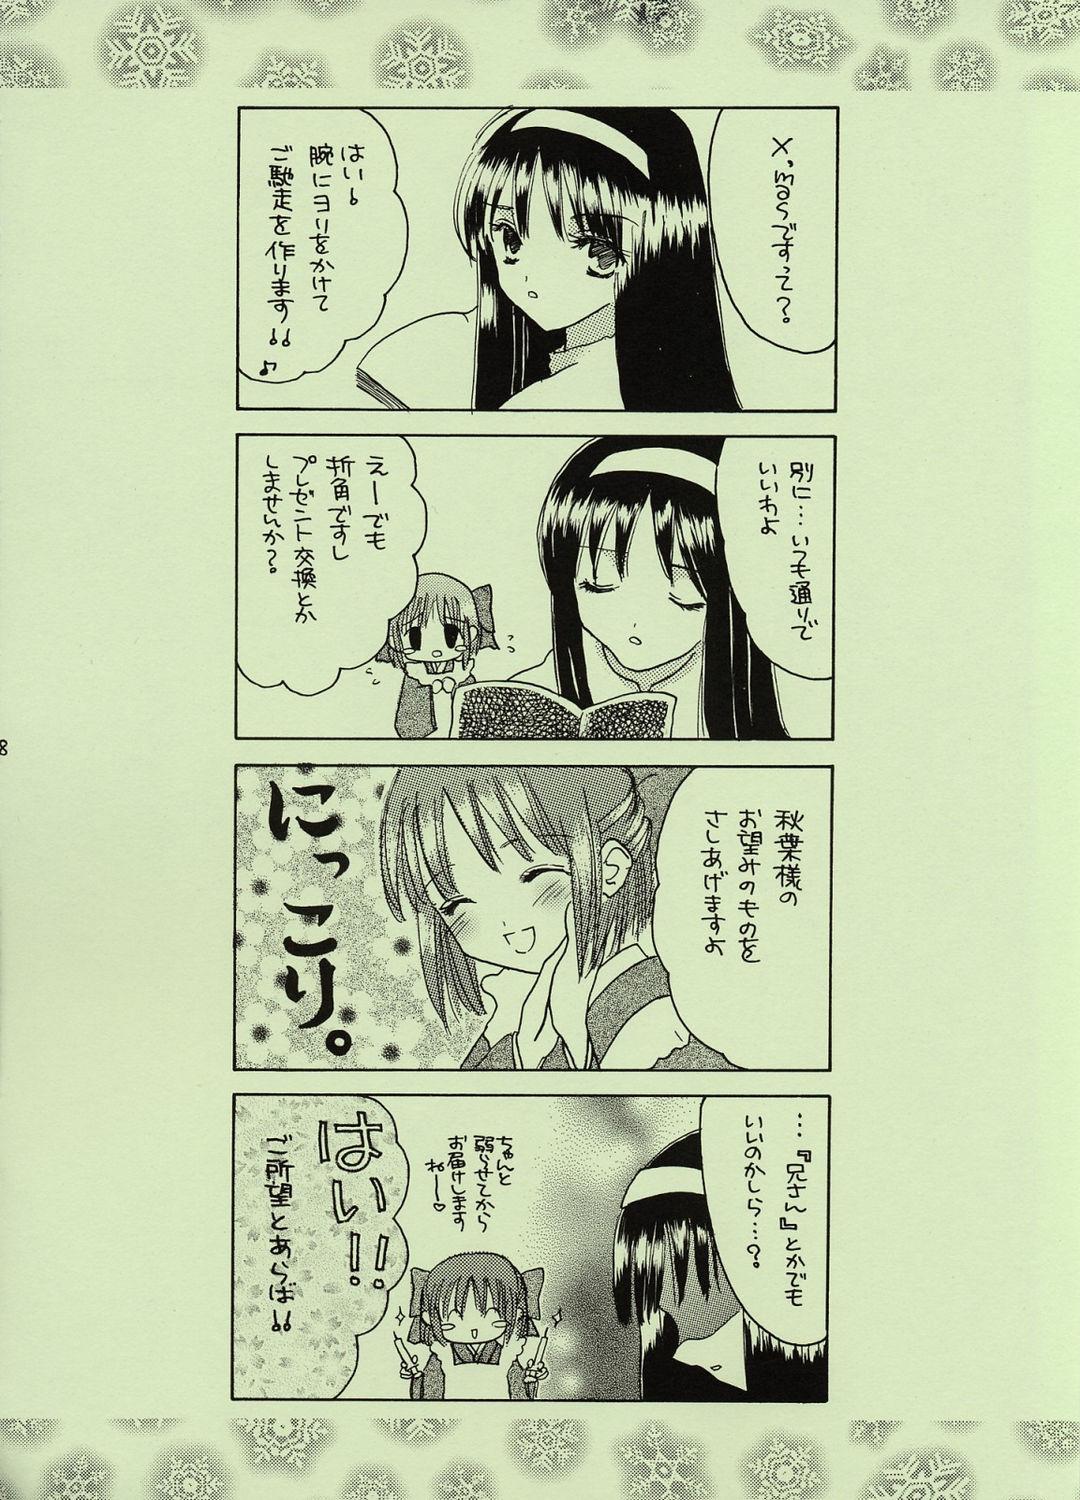 Bra Kinseiza - Tsukihime Esposa - Page 7